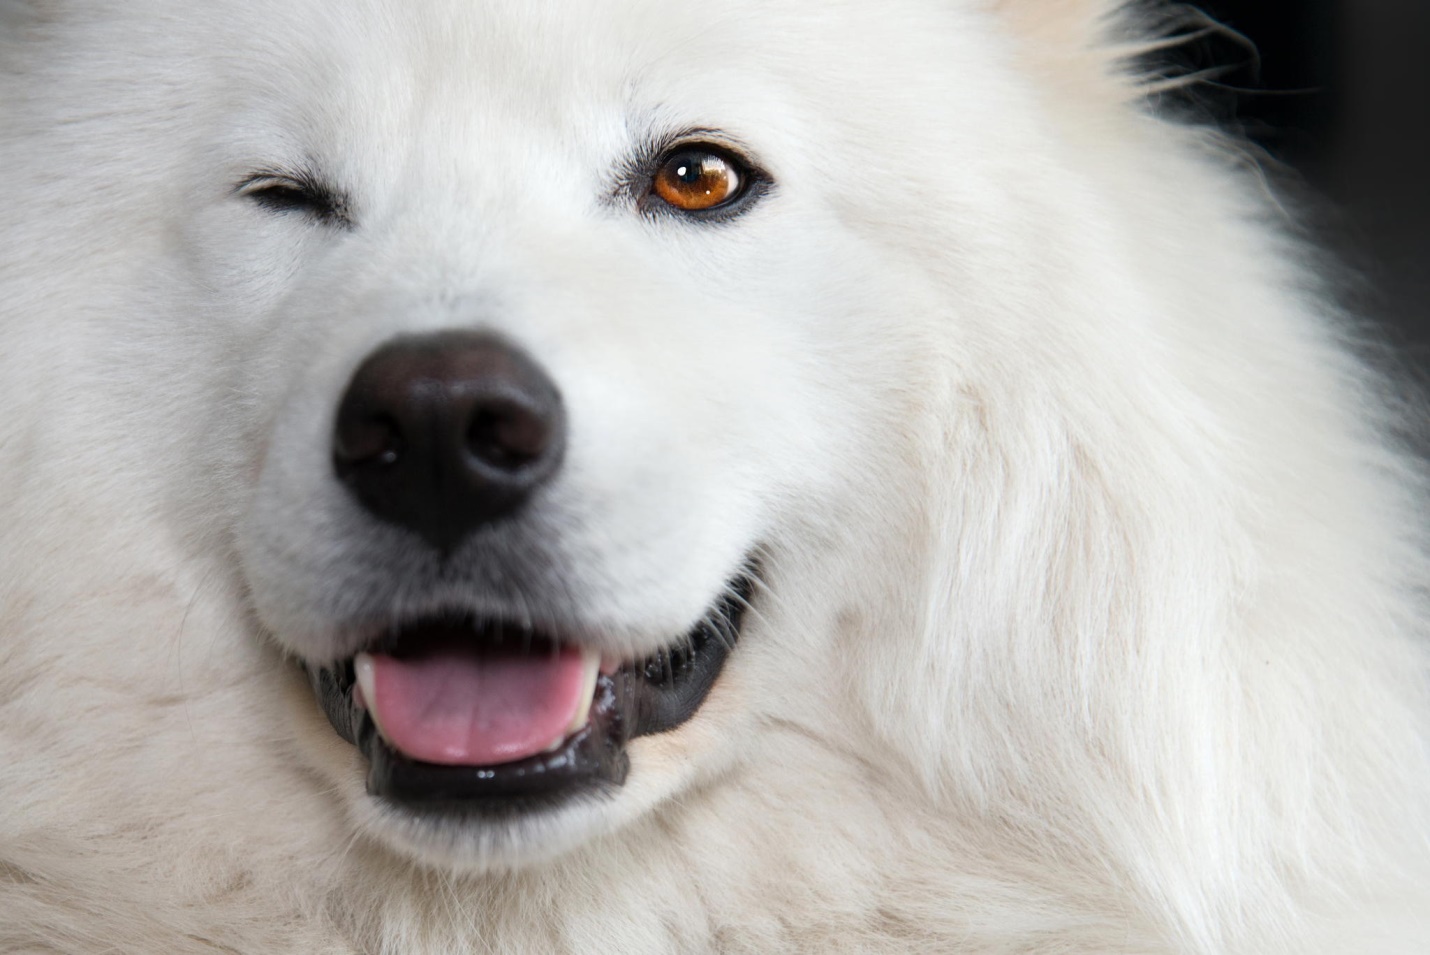 Лучшие клички для белых собак (475+ идей): красивые, оригинальные варианты